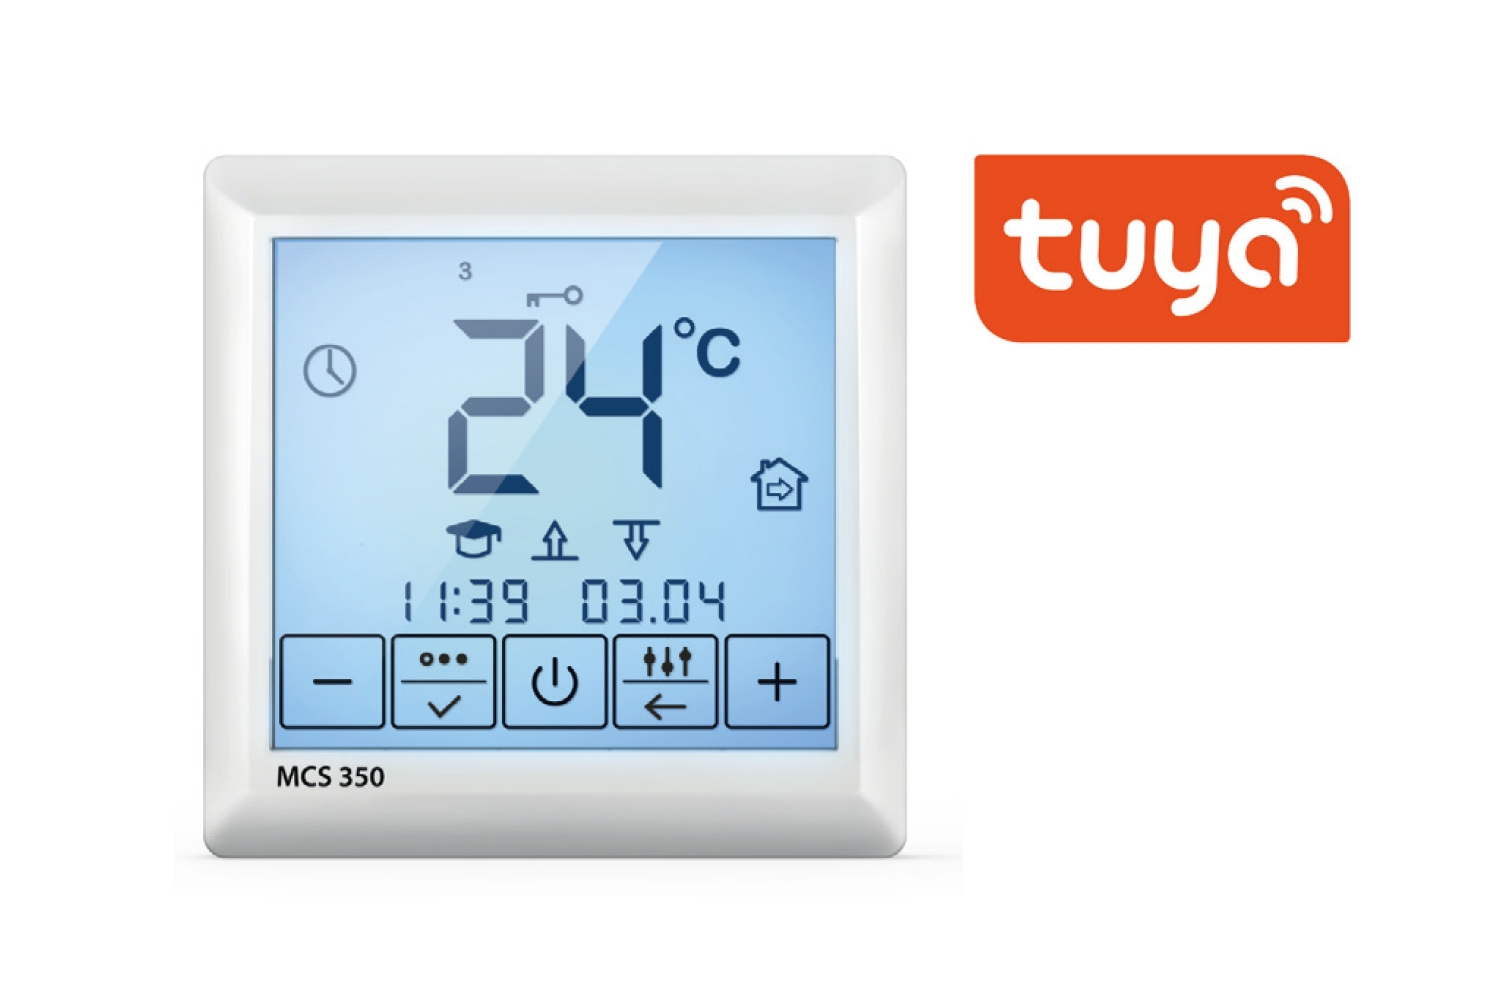 Thermostat Digitalregler Touch für Elektro Fußbodenheizung, mit digitaler programmierbarer Wochenzeitschaltuhr und WLAN Funktion, inkl. Fühlerleitung